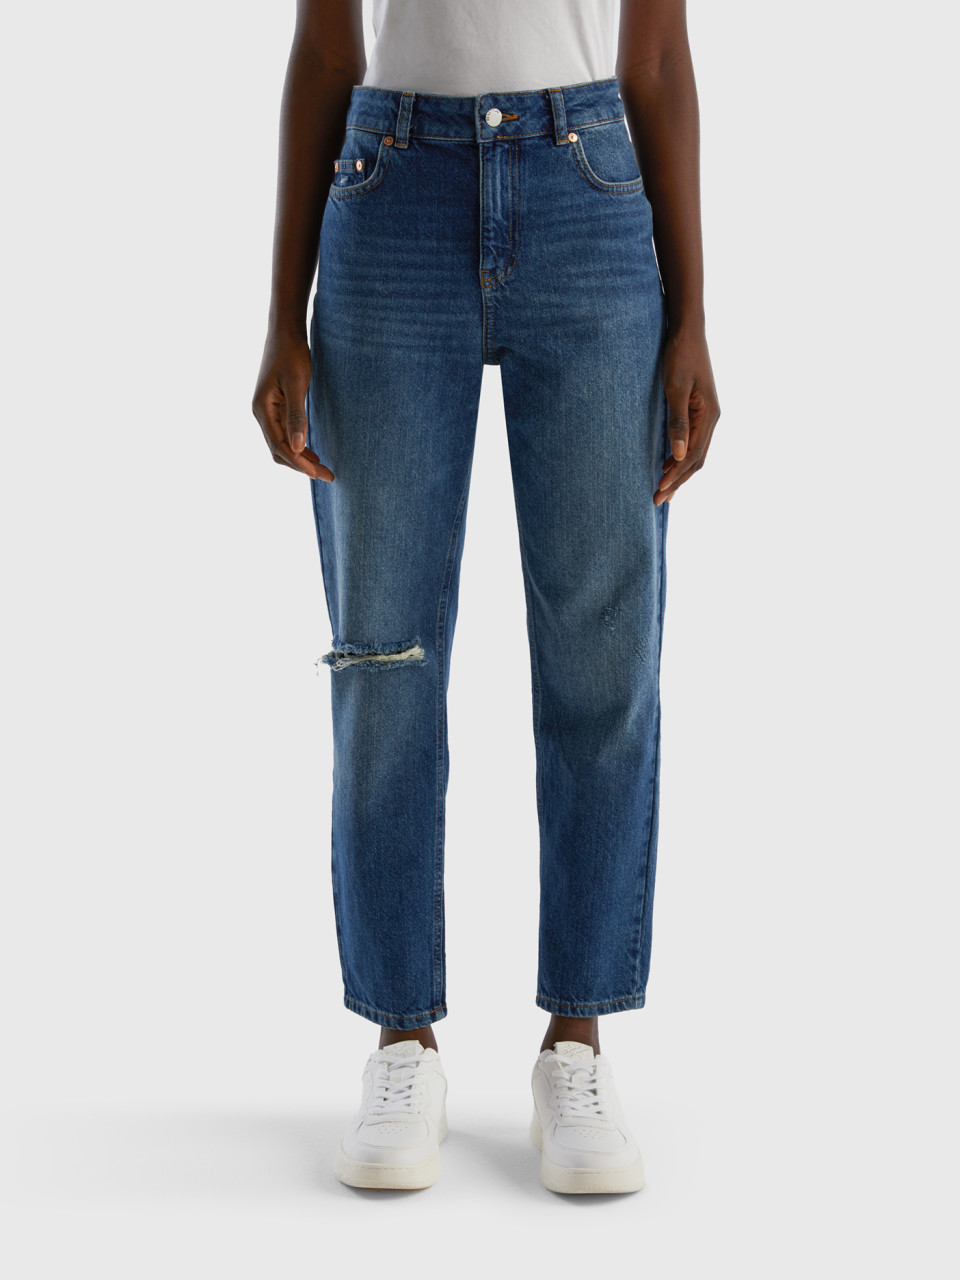 Benetton, Cropped-jeans Mit Hohem Bund, Dunkelblau, female